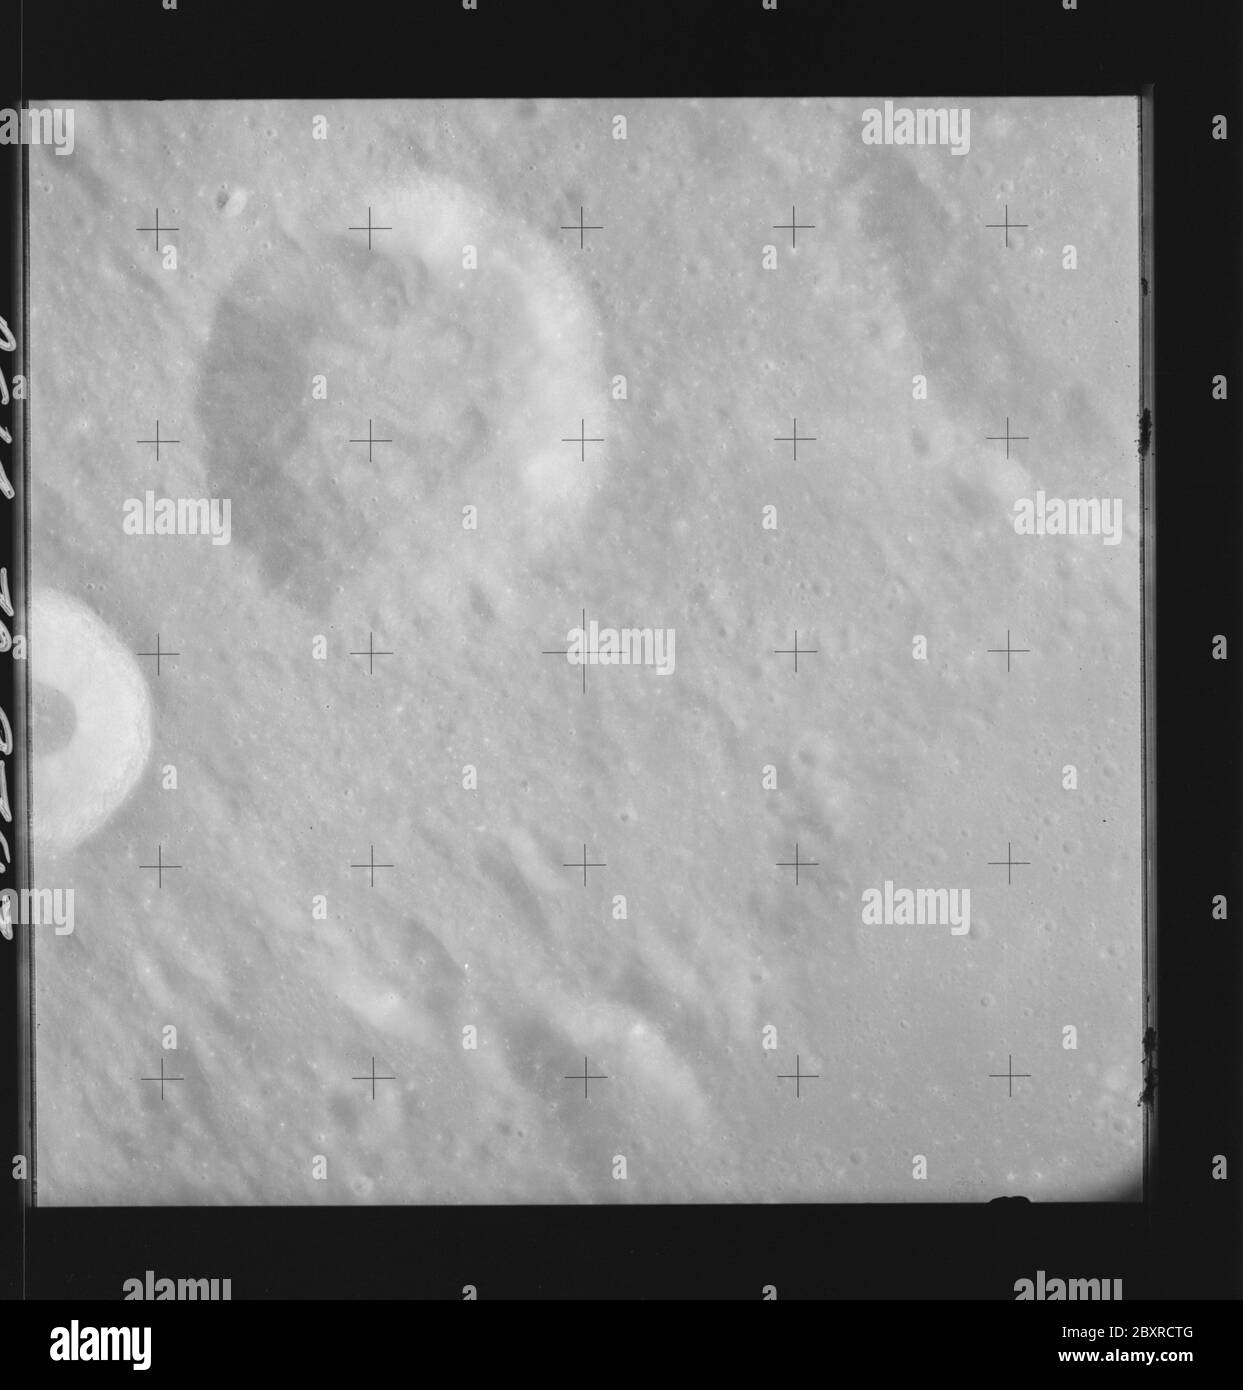 AS14-70-9793 - Apollo 14 - image de la mission Apollo 14 - vue des cratères Hipparchus C et Hind.; portée et contenu: La base de données originale décrit ceci comme: Description: Vue des cratères Hipparchus C et Hind. Des images ont été prises sur la Révolution 26 de la mission Apollo 14. Le magazine original a été étiqueté Q, le type de film était 3400BW (Panatomic-X, noir et blanc), objectif de 80 mm avec une élévation du soleil de 48 degrés. L'échelle de photo approximative était de 1:1,380,000. La principale point de latence était 7.0S par Longitude 7.0E,avec une inclinaison verticale de la caméra. Descripteurs : vol Apollo 14, Lune (planète) catégories : OBS lunaire Banque D'Images